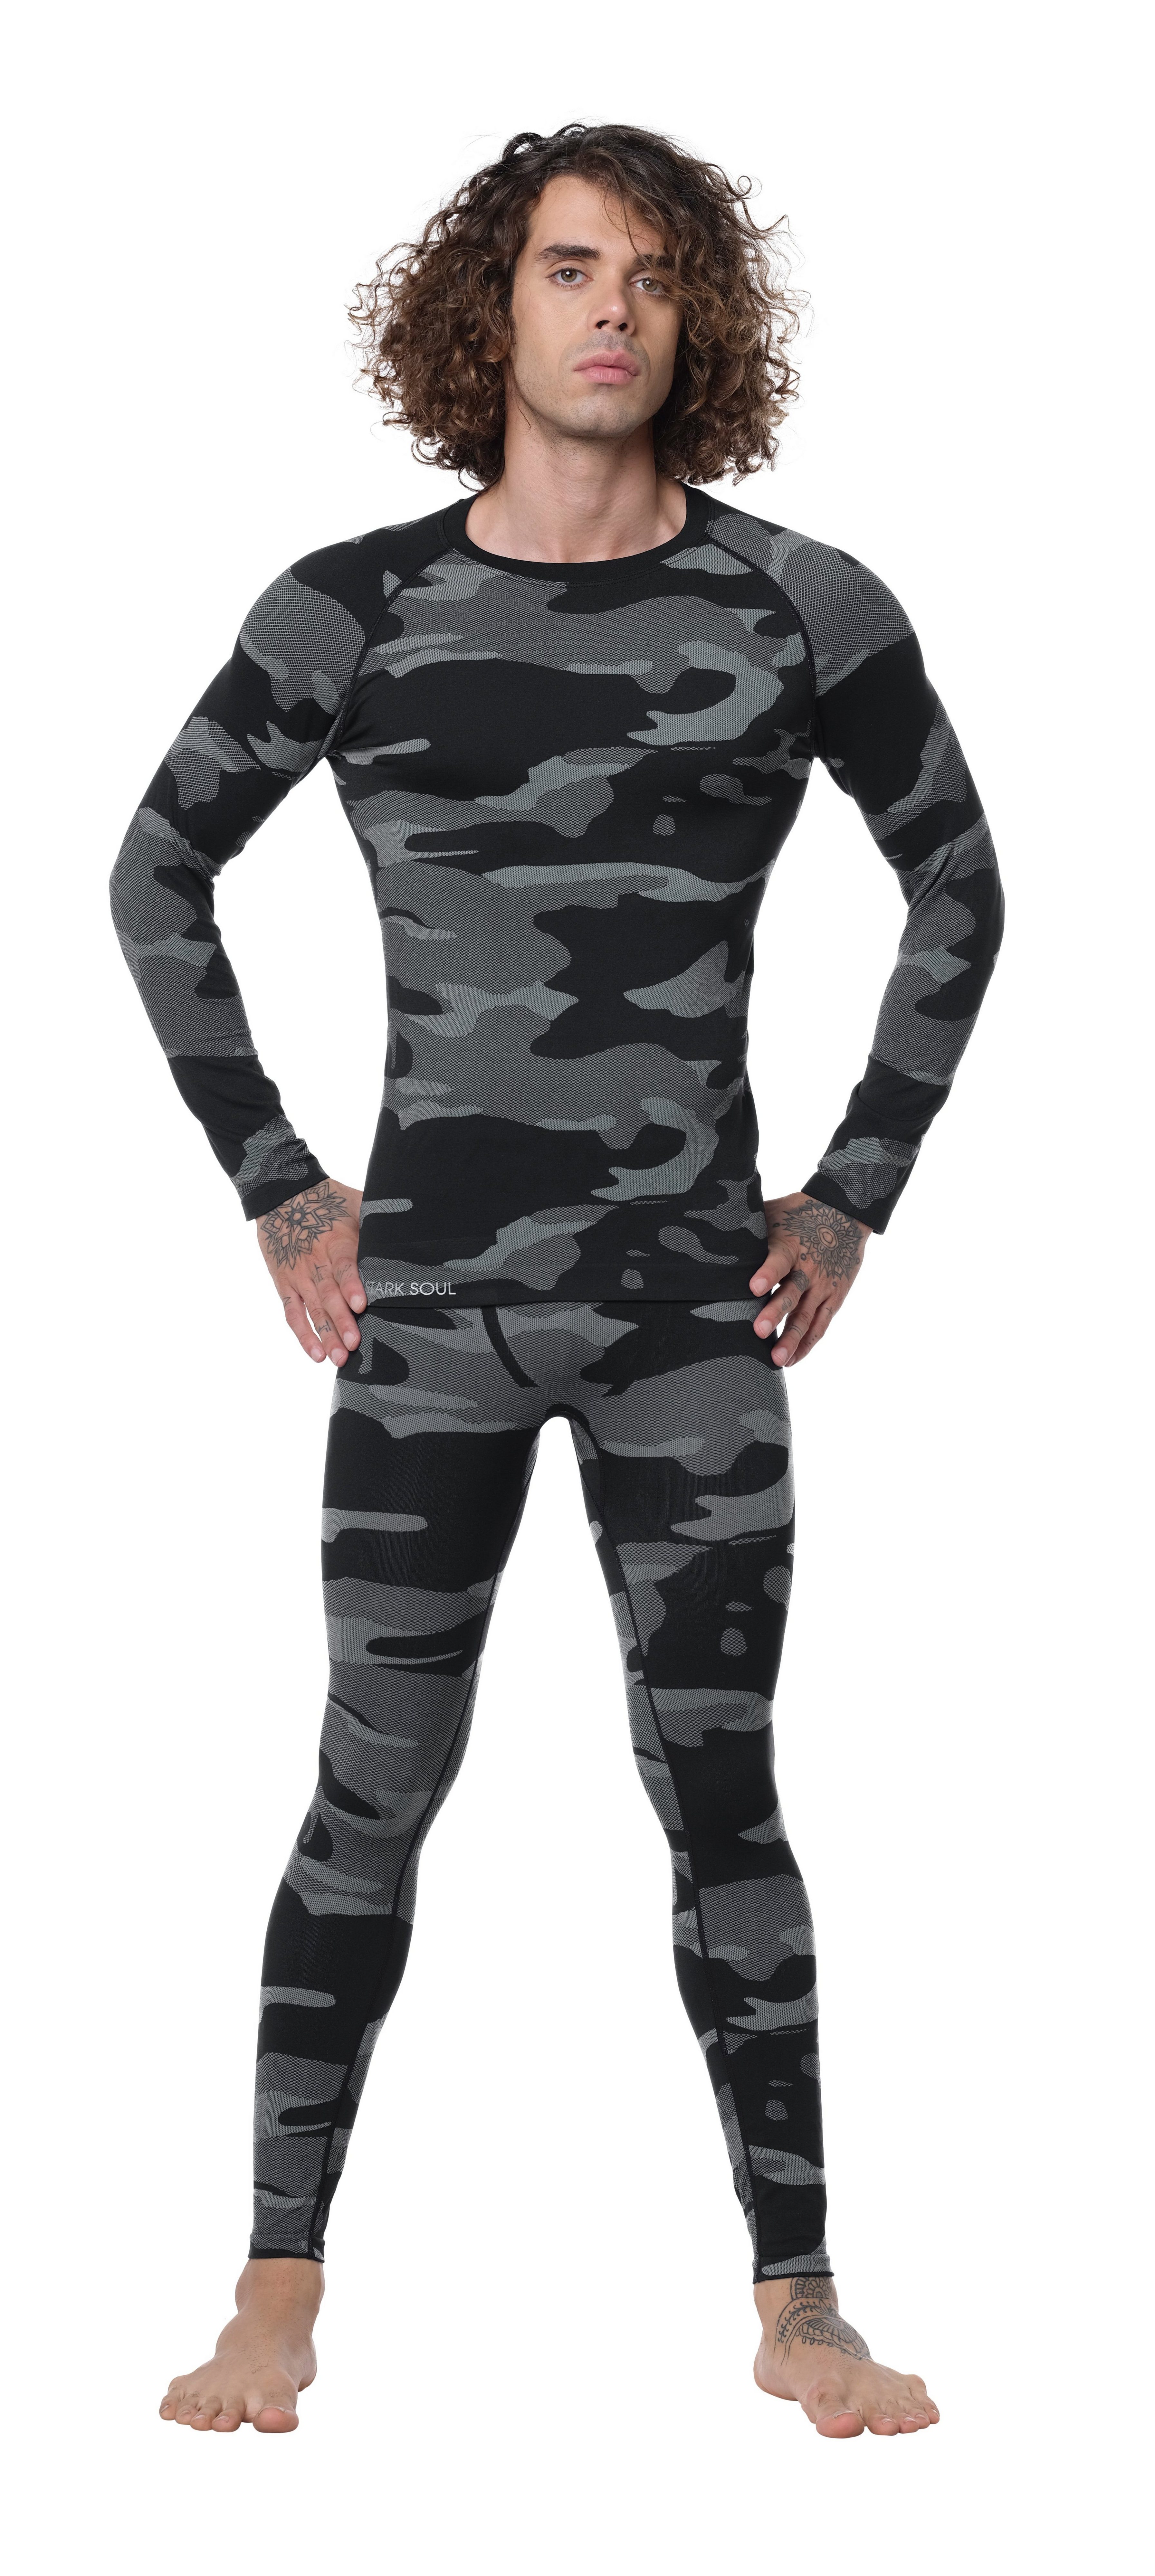 Langarm Unterwäsche, Funktionsshirt Camouflage, Herren Stark Grau Thermo-Funktionshirt Outdoor-Ski Soul®